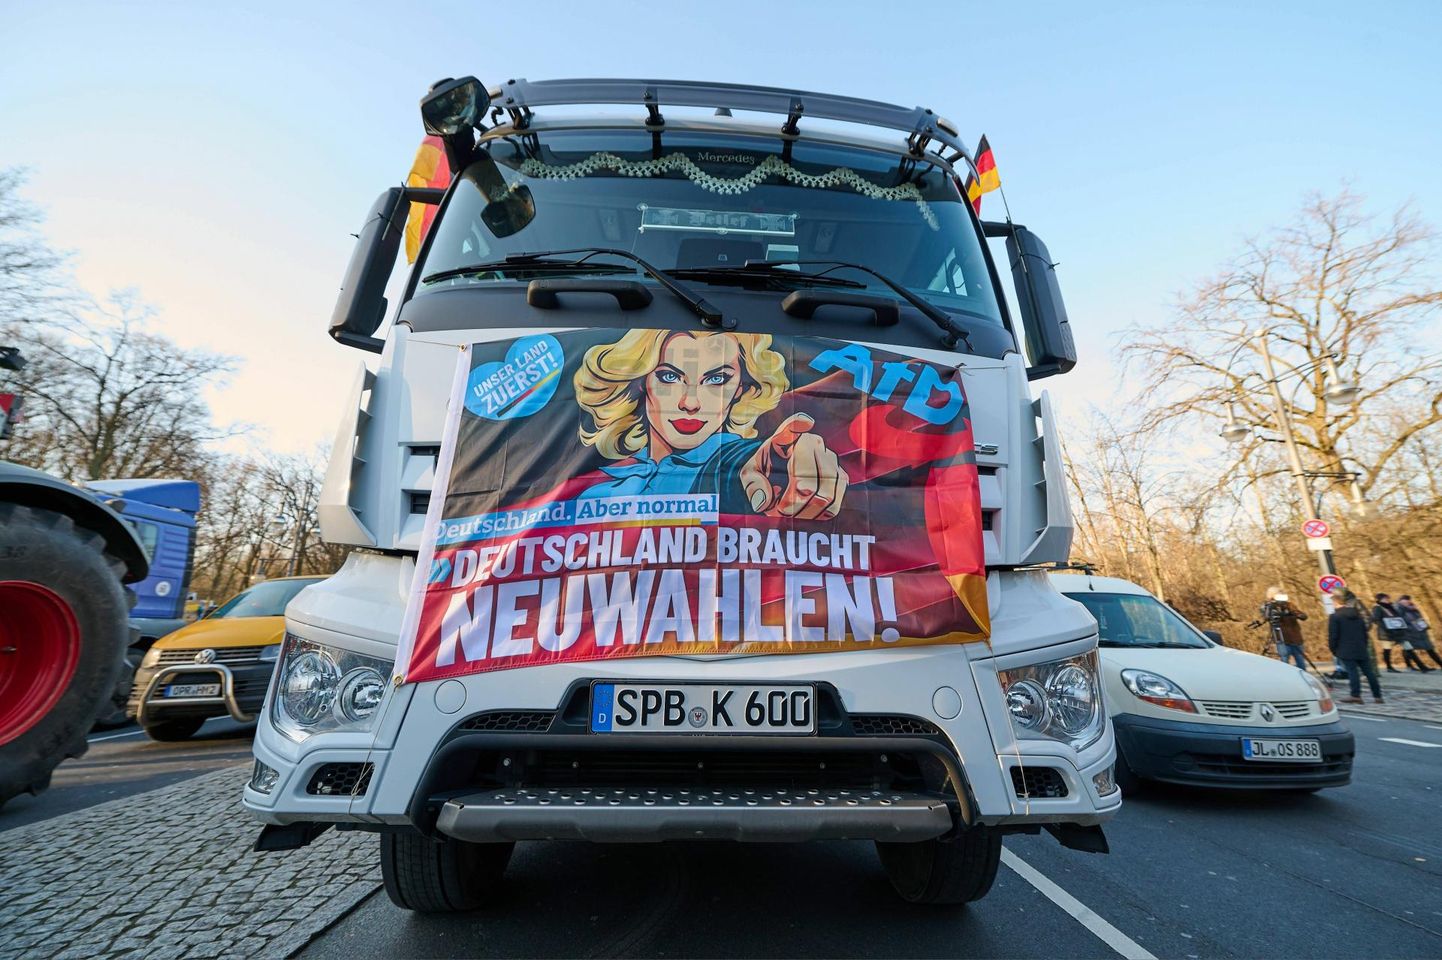 Põllumeeste valitsusvastane meeleavaldus Berliinis. Traktoritel ja veokitel võis näha paremäärmusliku partei Alternatiiv Saksamaale (AfD) logoga plakateid, millest ühe tekst teatab, et Saksamaa vajab uusi valimisi.